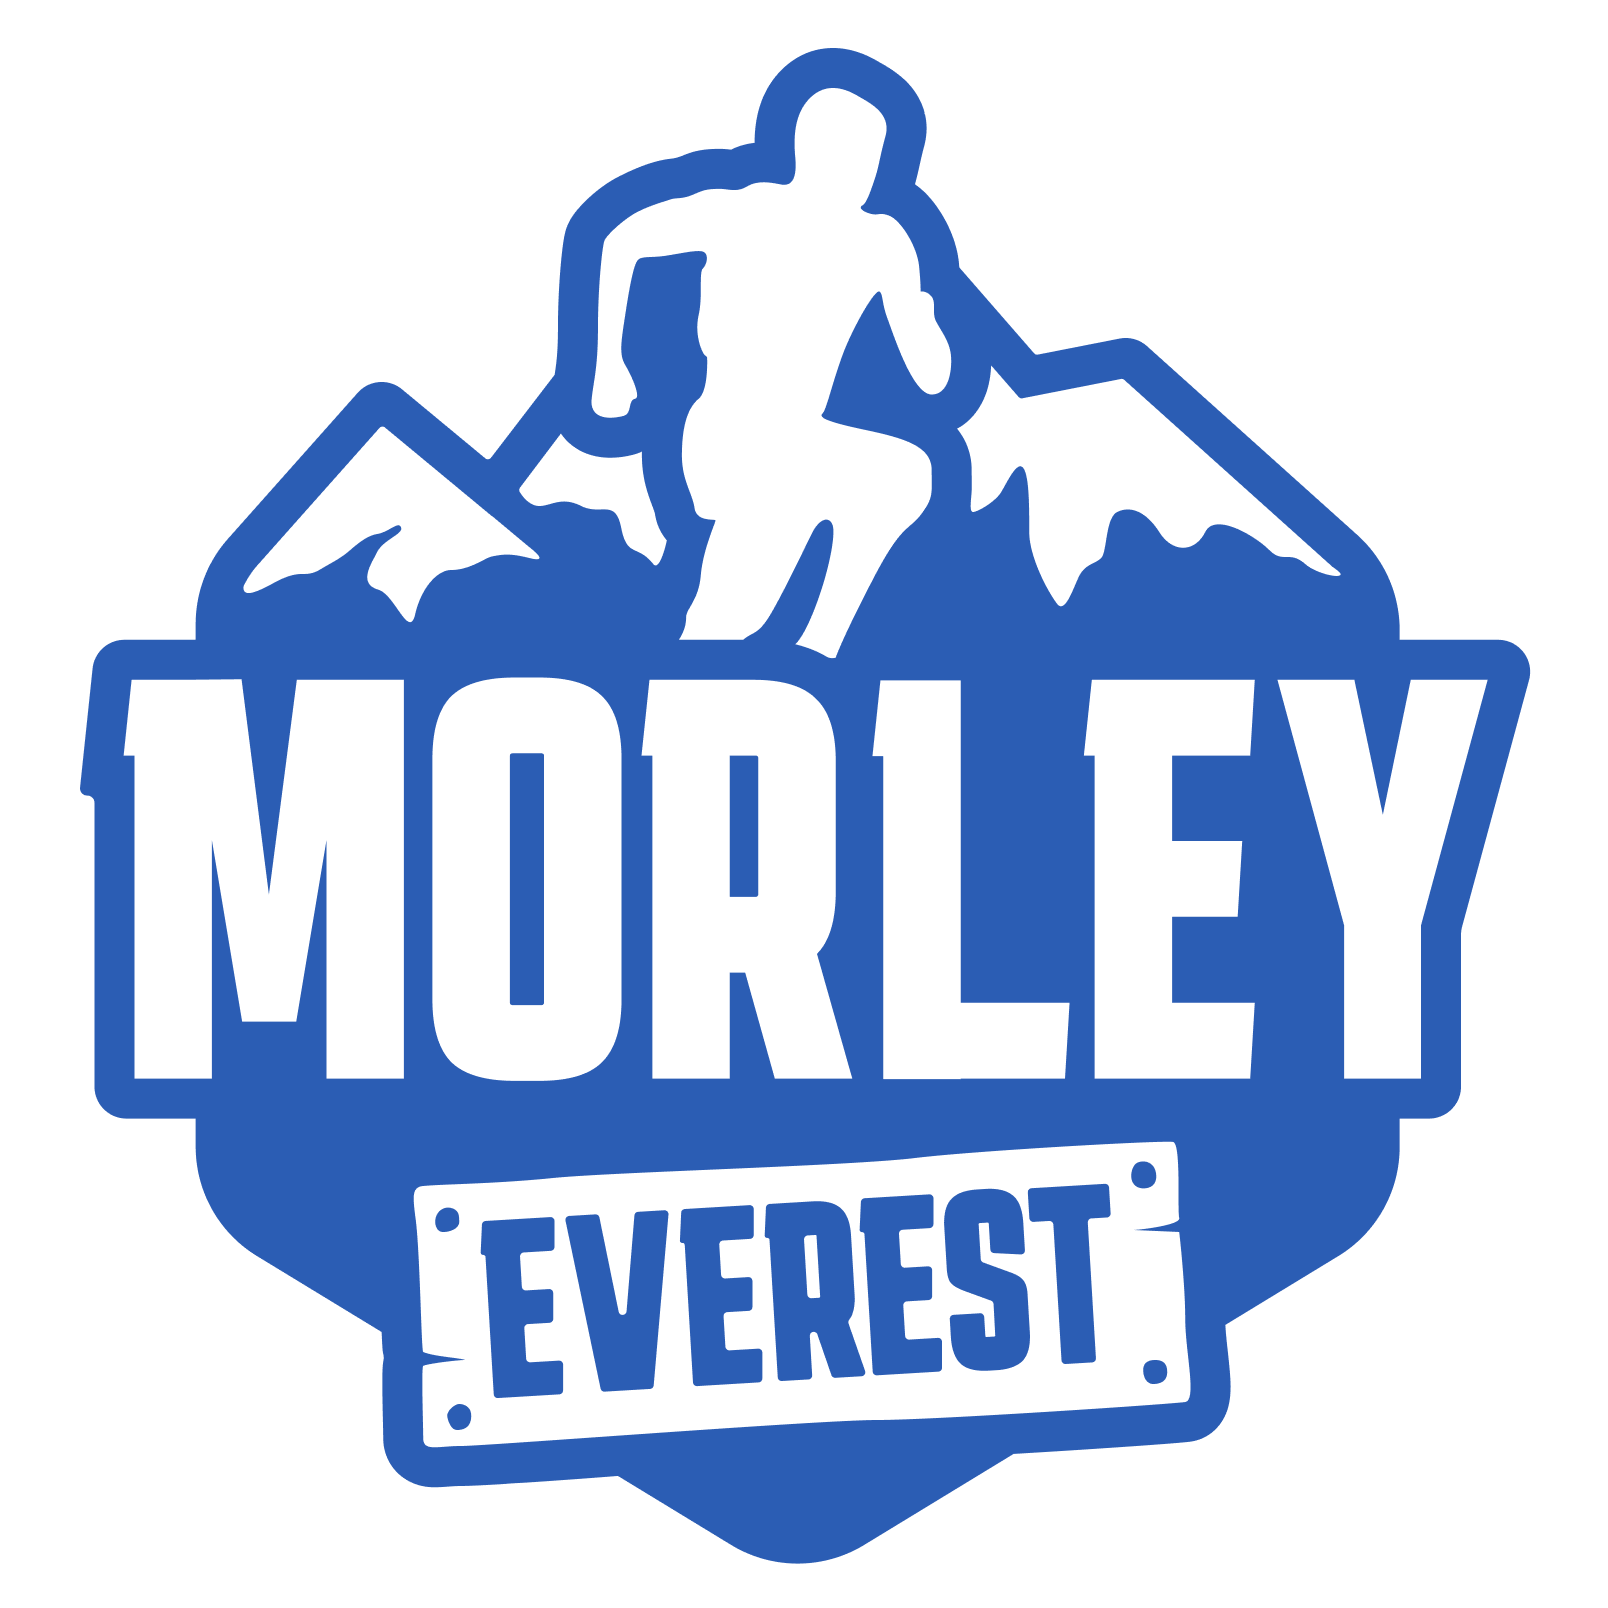 morley-everest-filled-blue